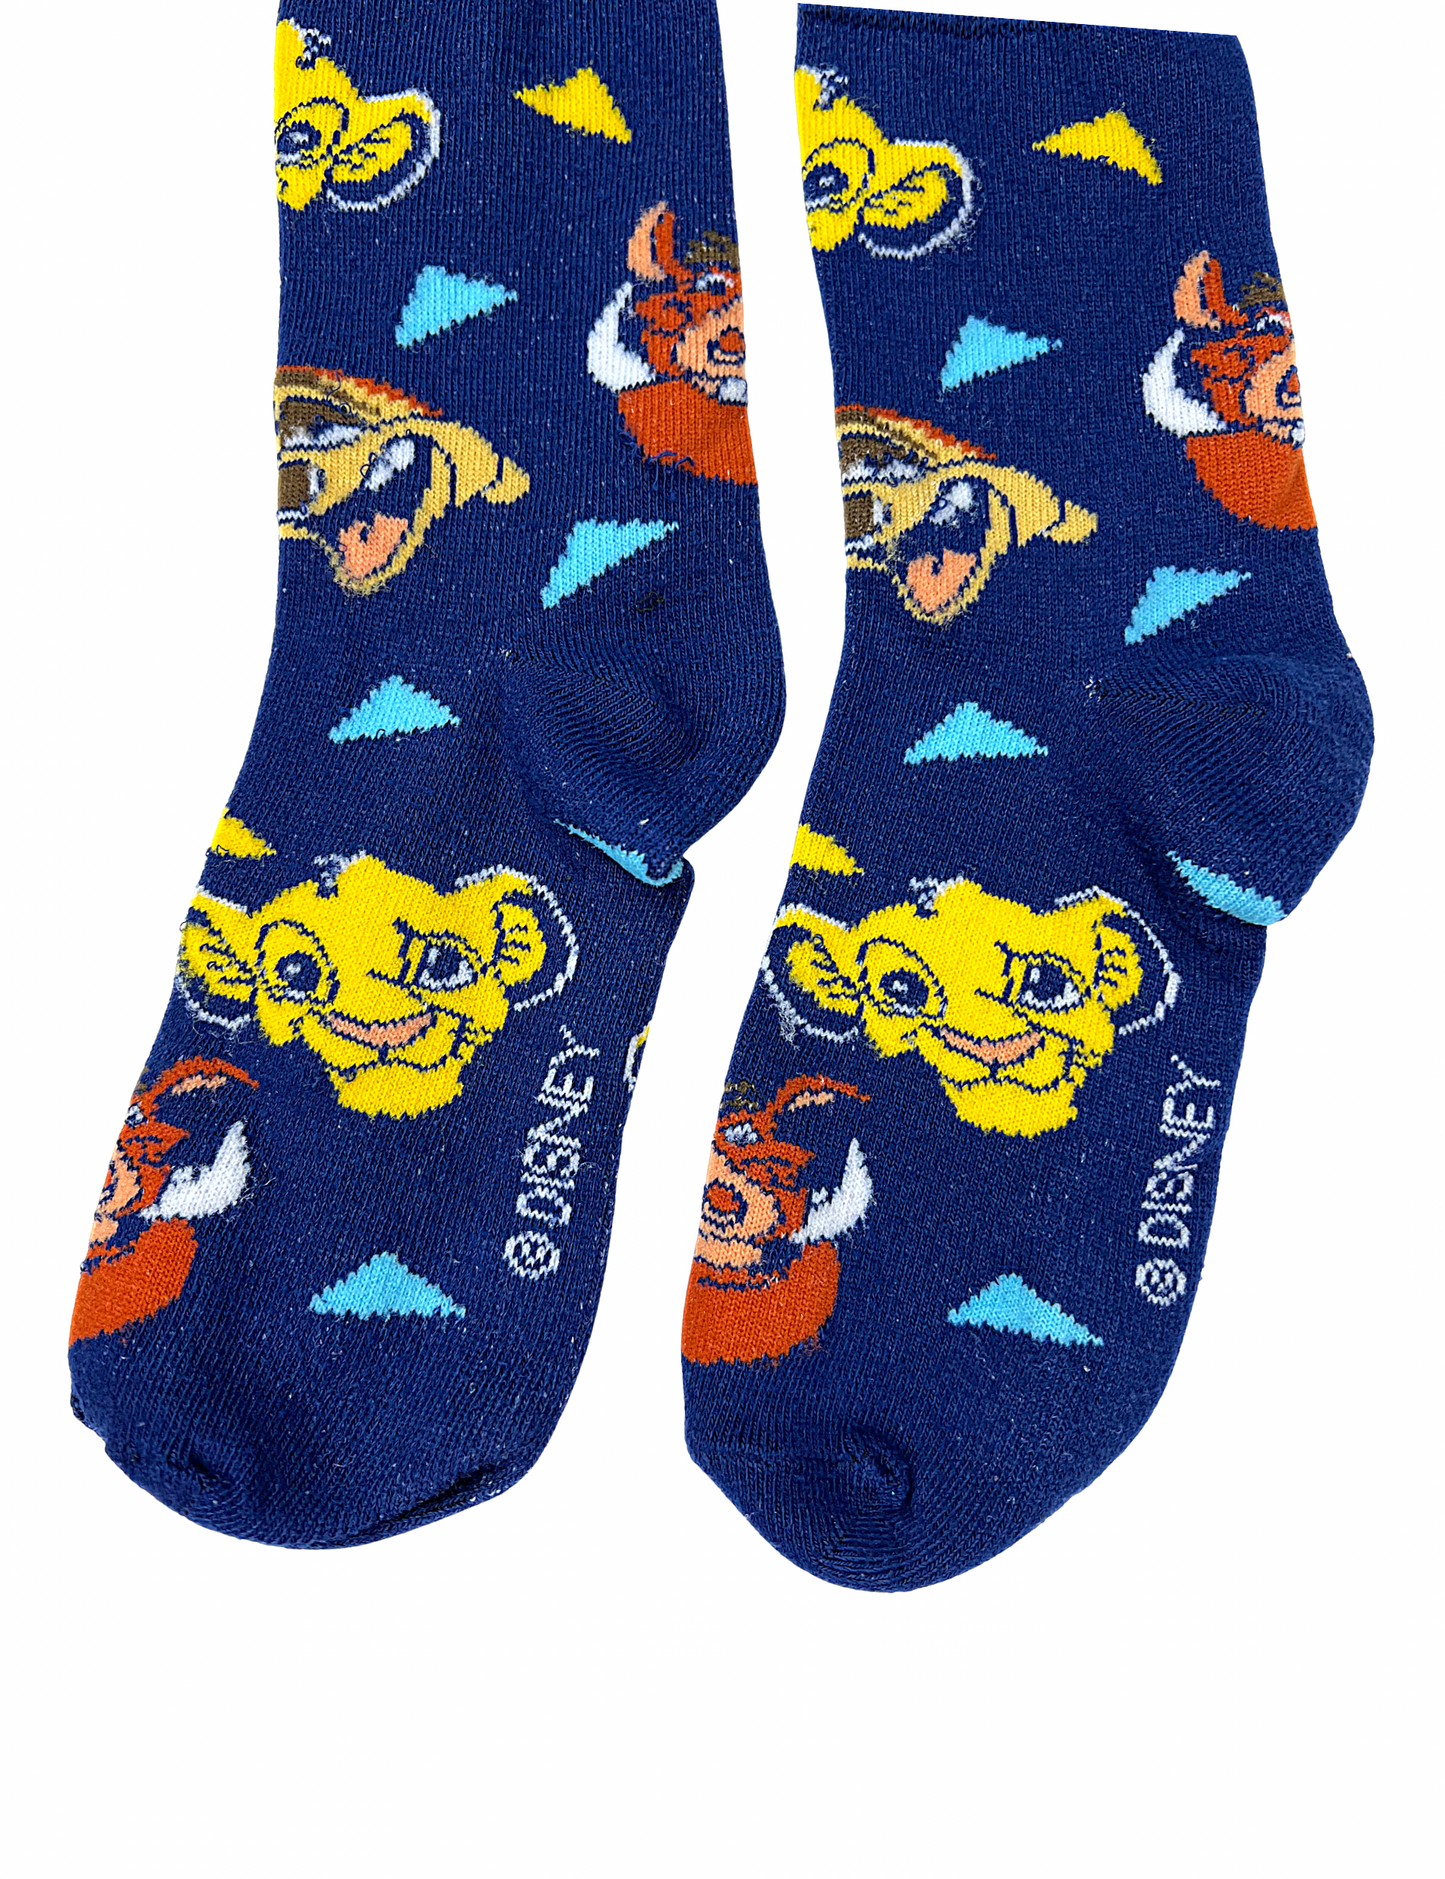 90’s The Lion King Disney Socks